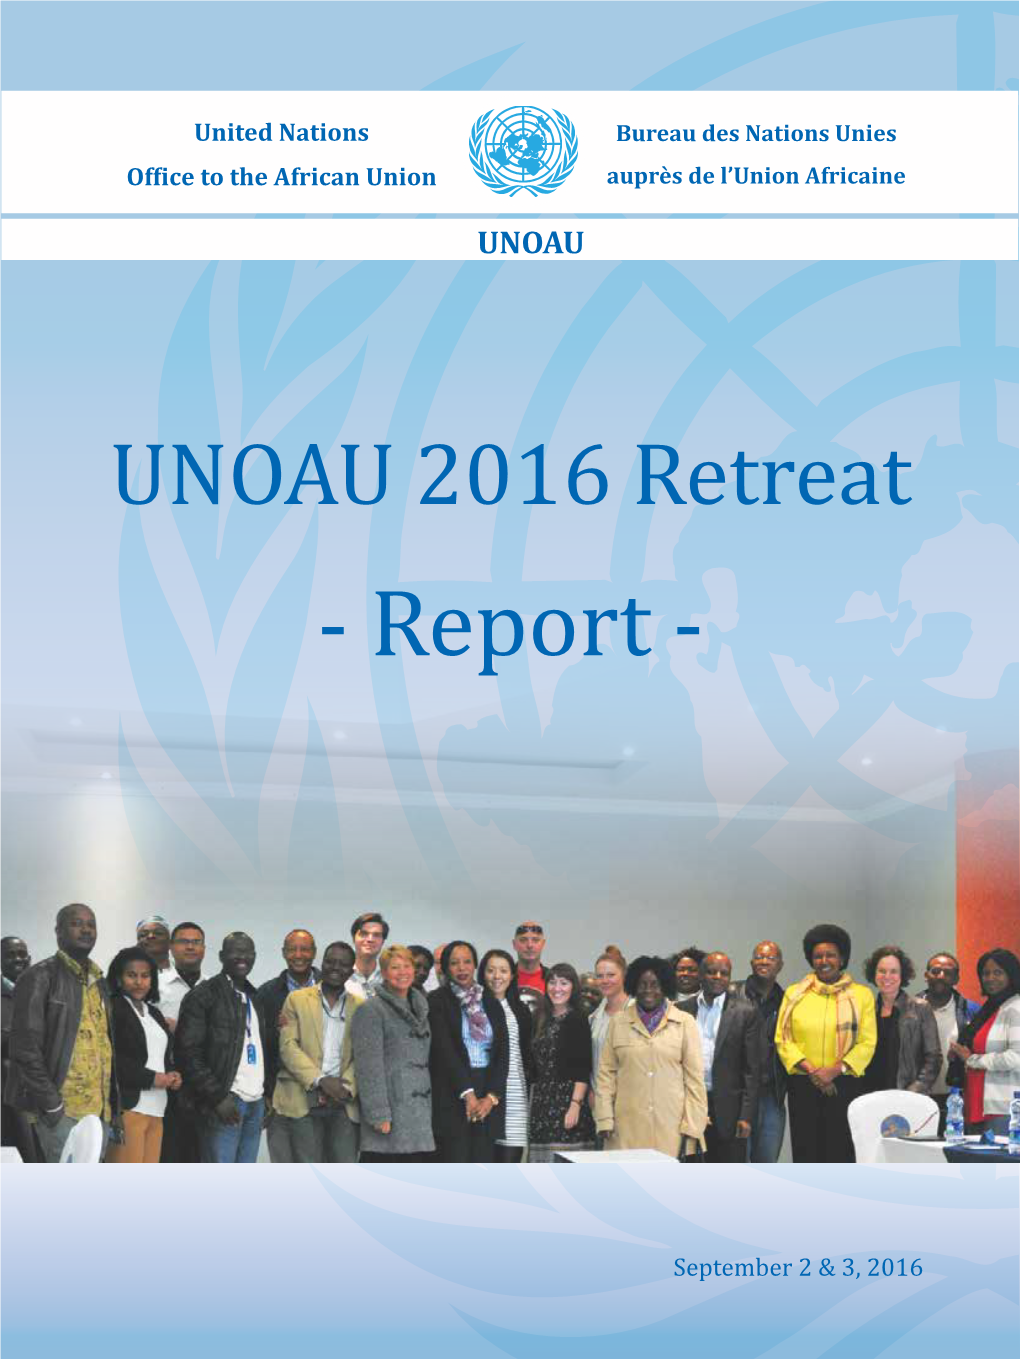 UNOAU Annual Retreat Report